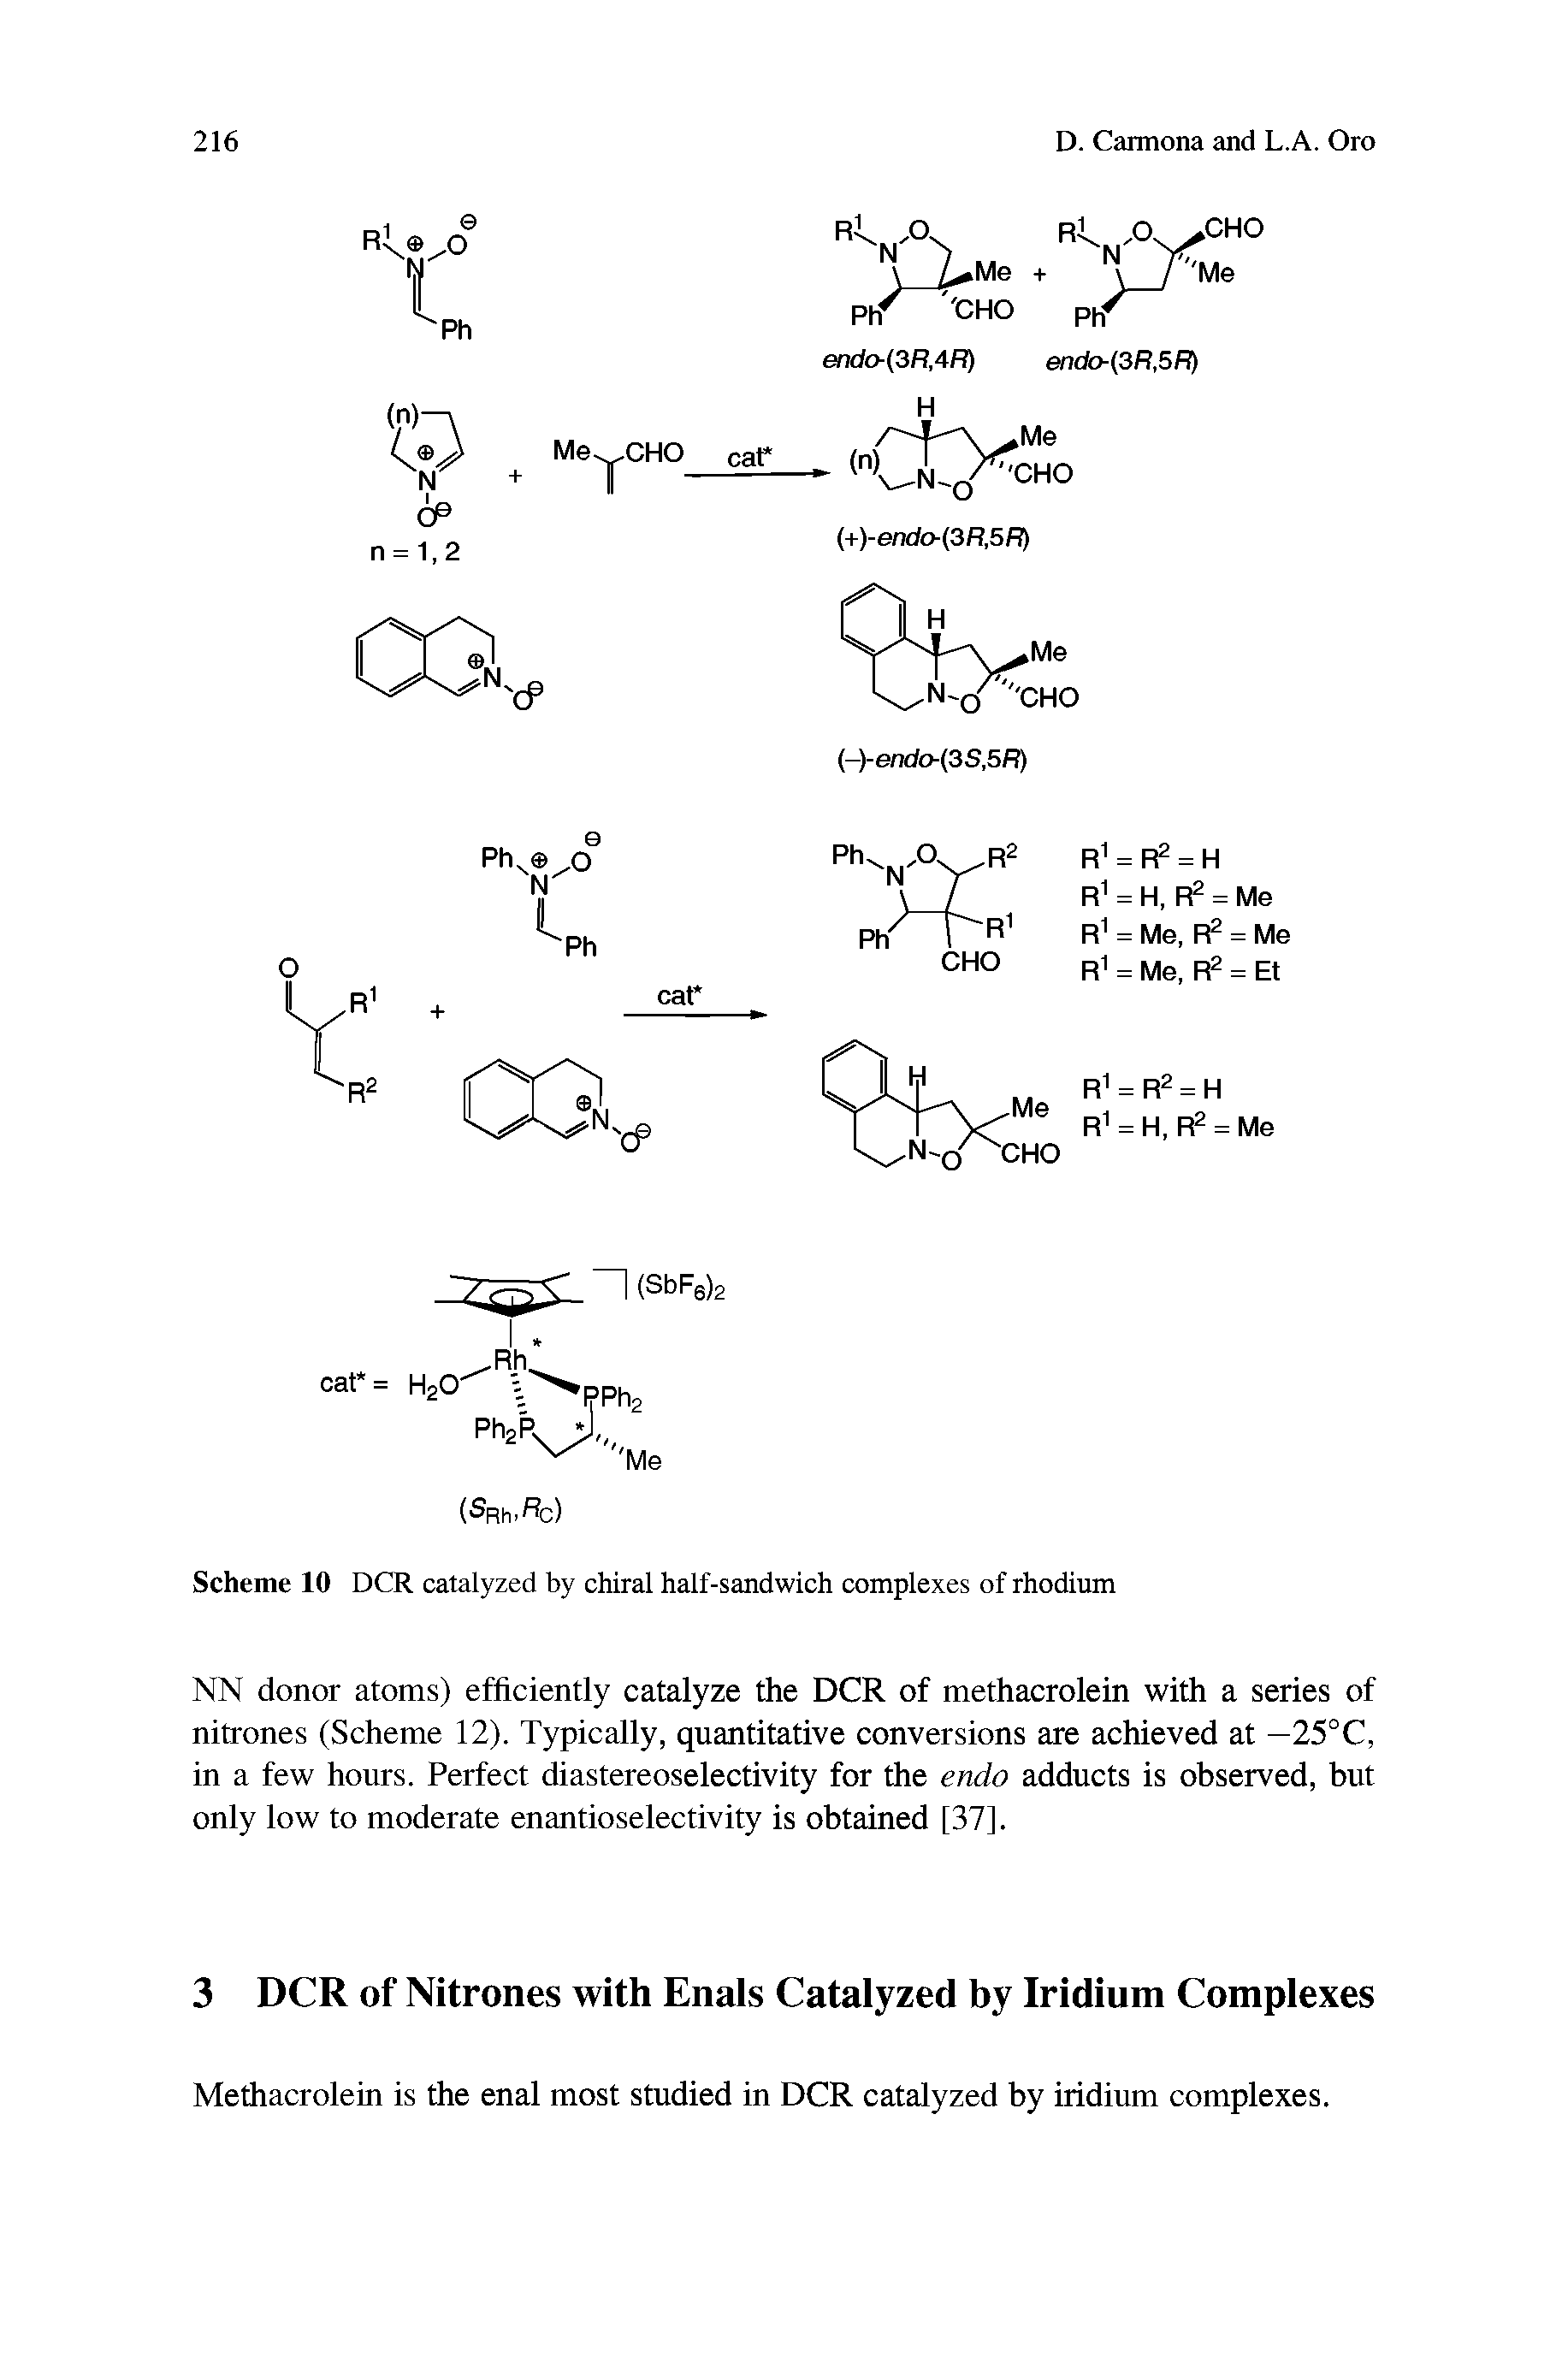 Scheme 10 OCR catalyzed by chiral half-sandwich complexes of rhodium...